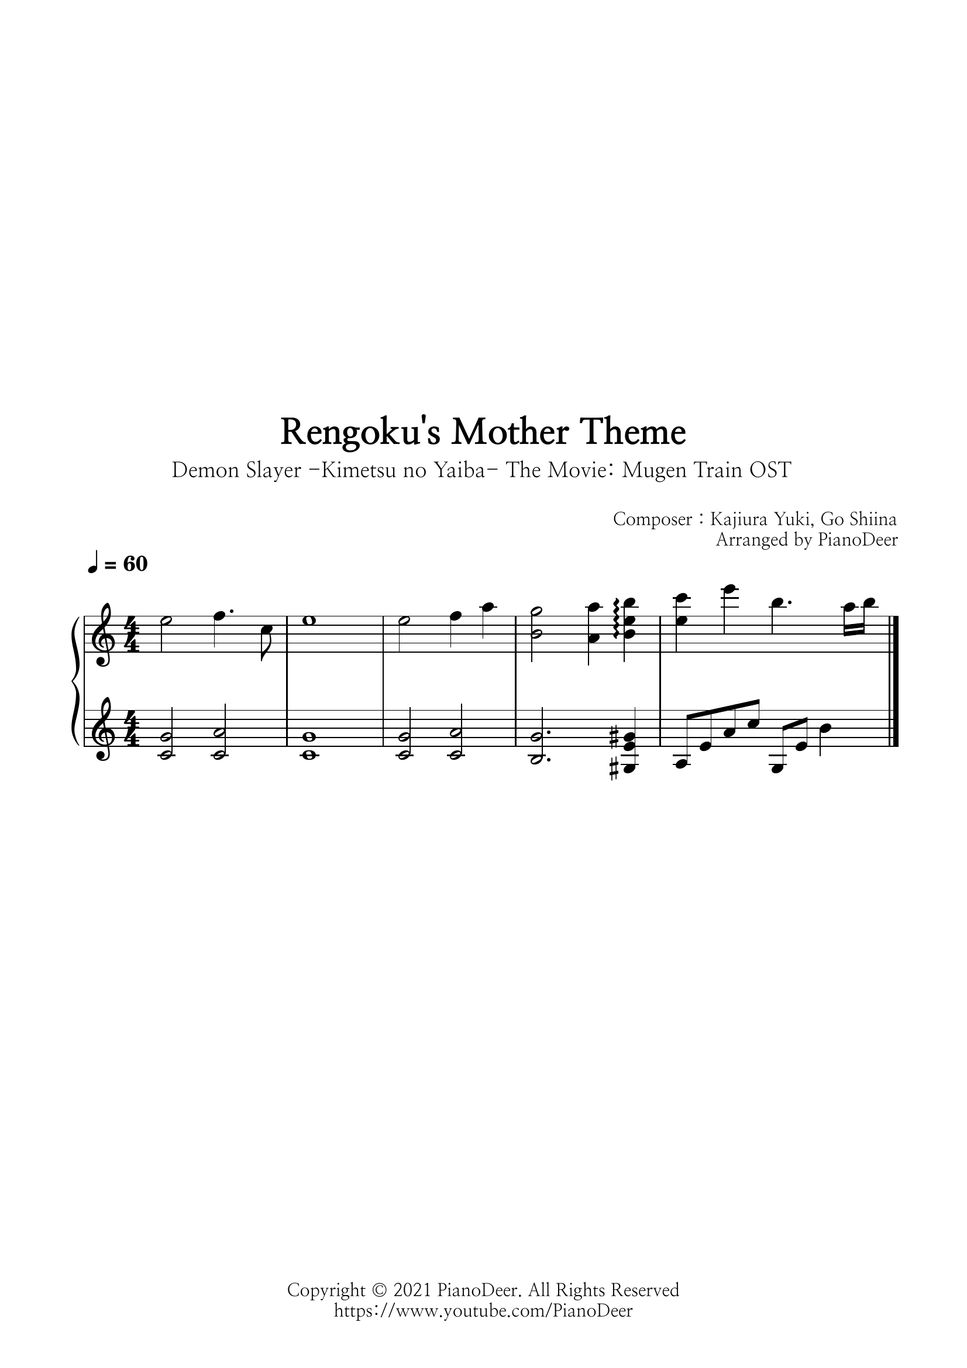 Demon Slayer: Kimetsu No Yaiba OST - Rengoku's Mother Theme by PianoDeer